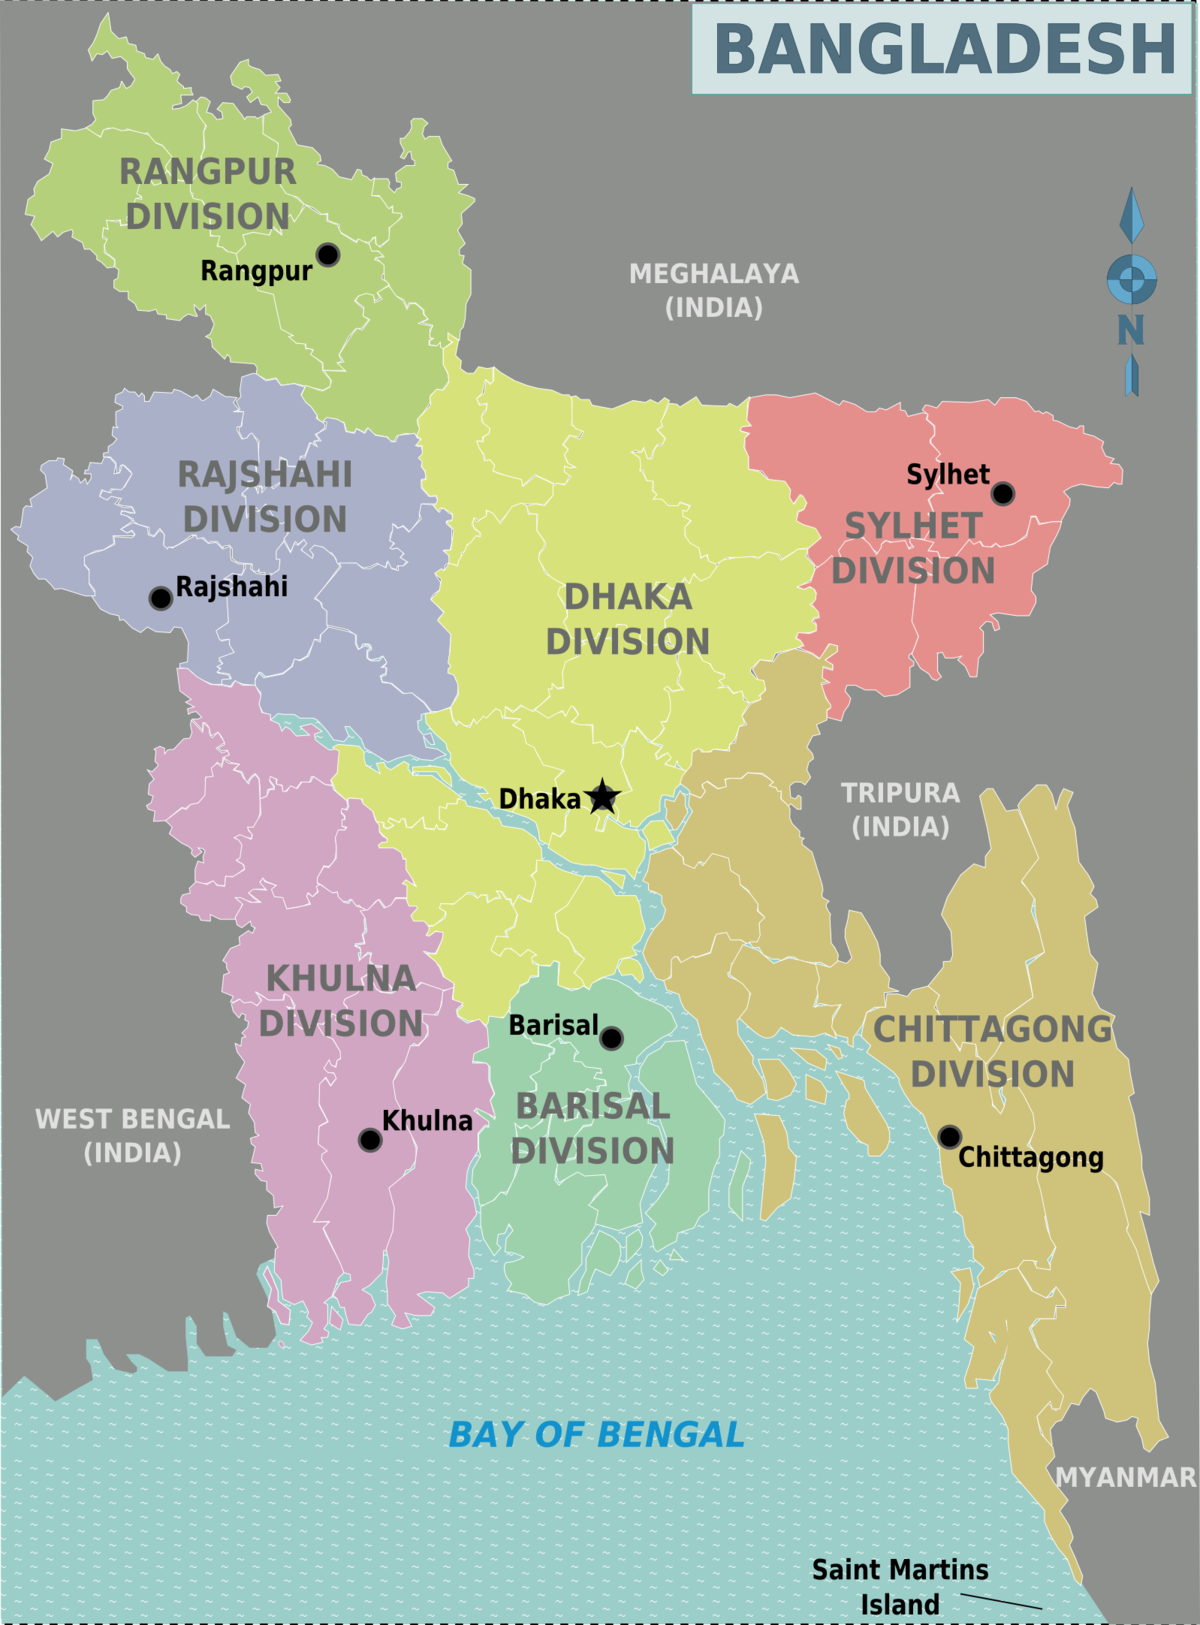 Bangladés - Wikiviajes